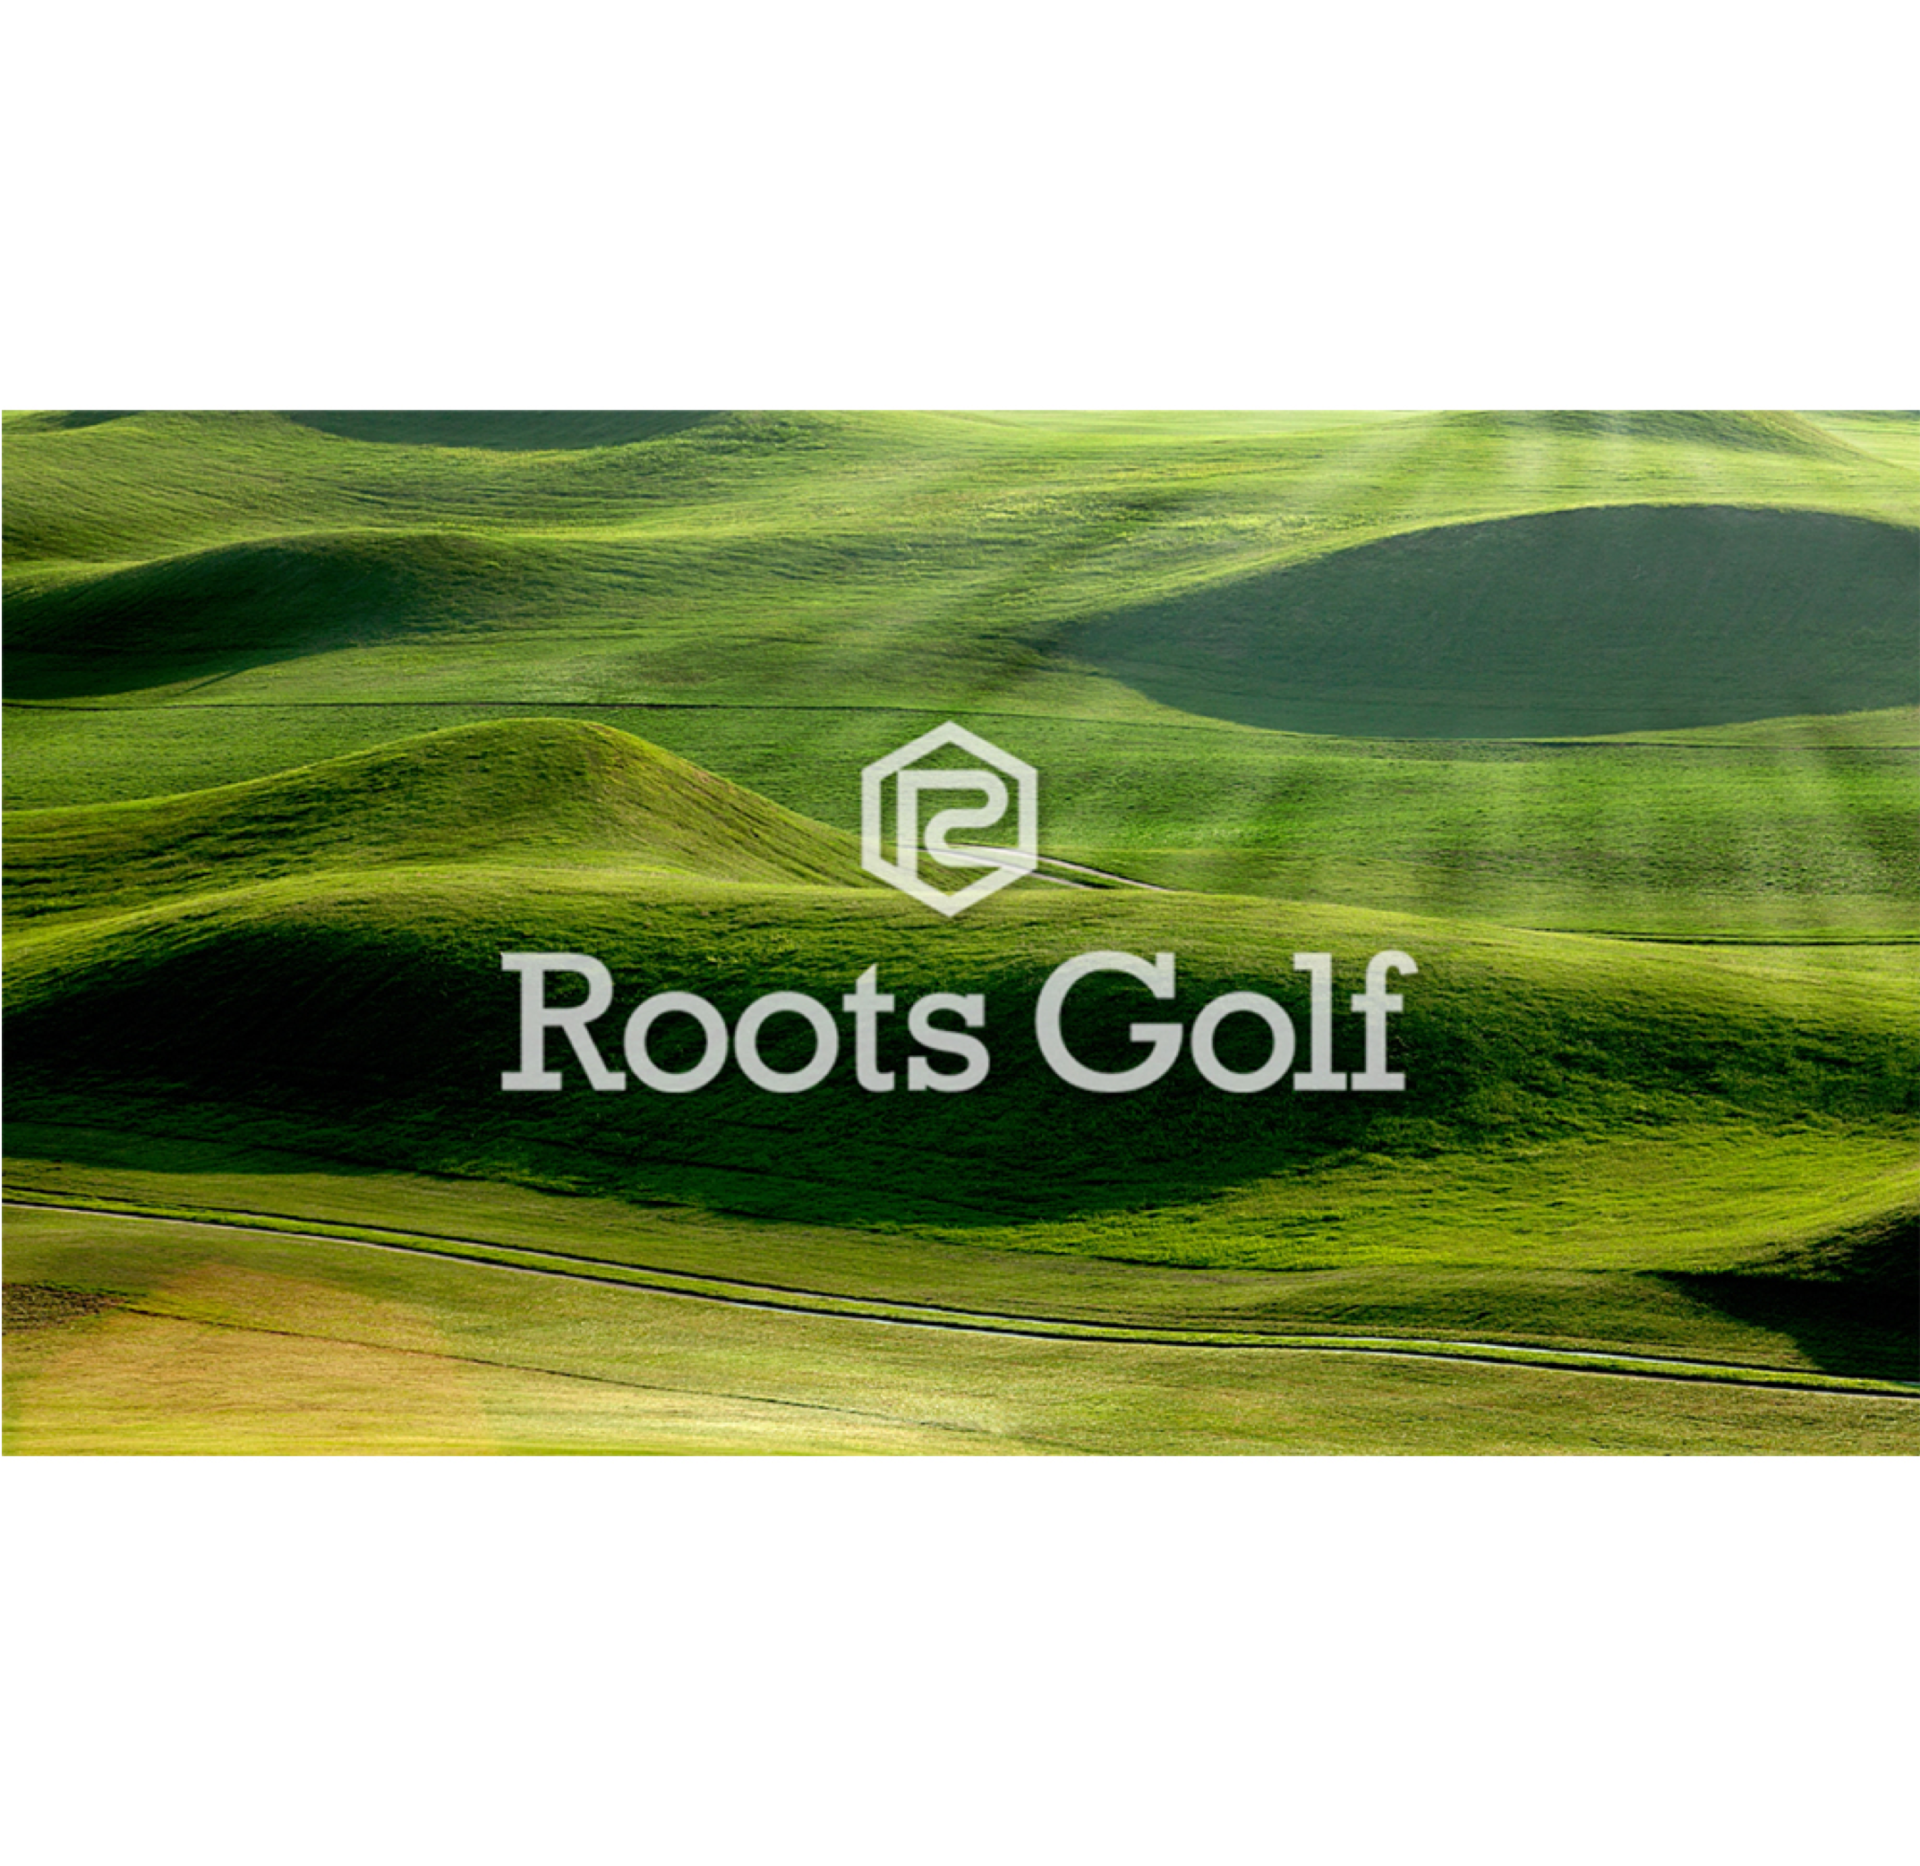 Roots Golf ブランドイメージムービー